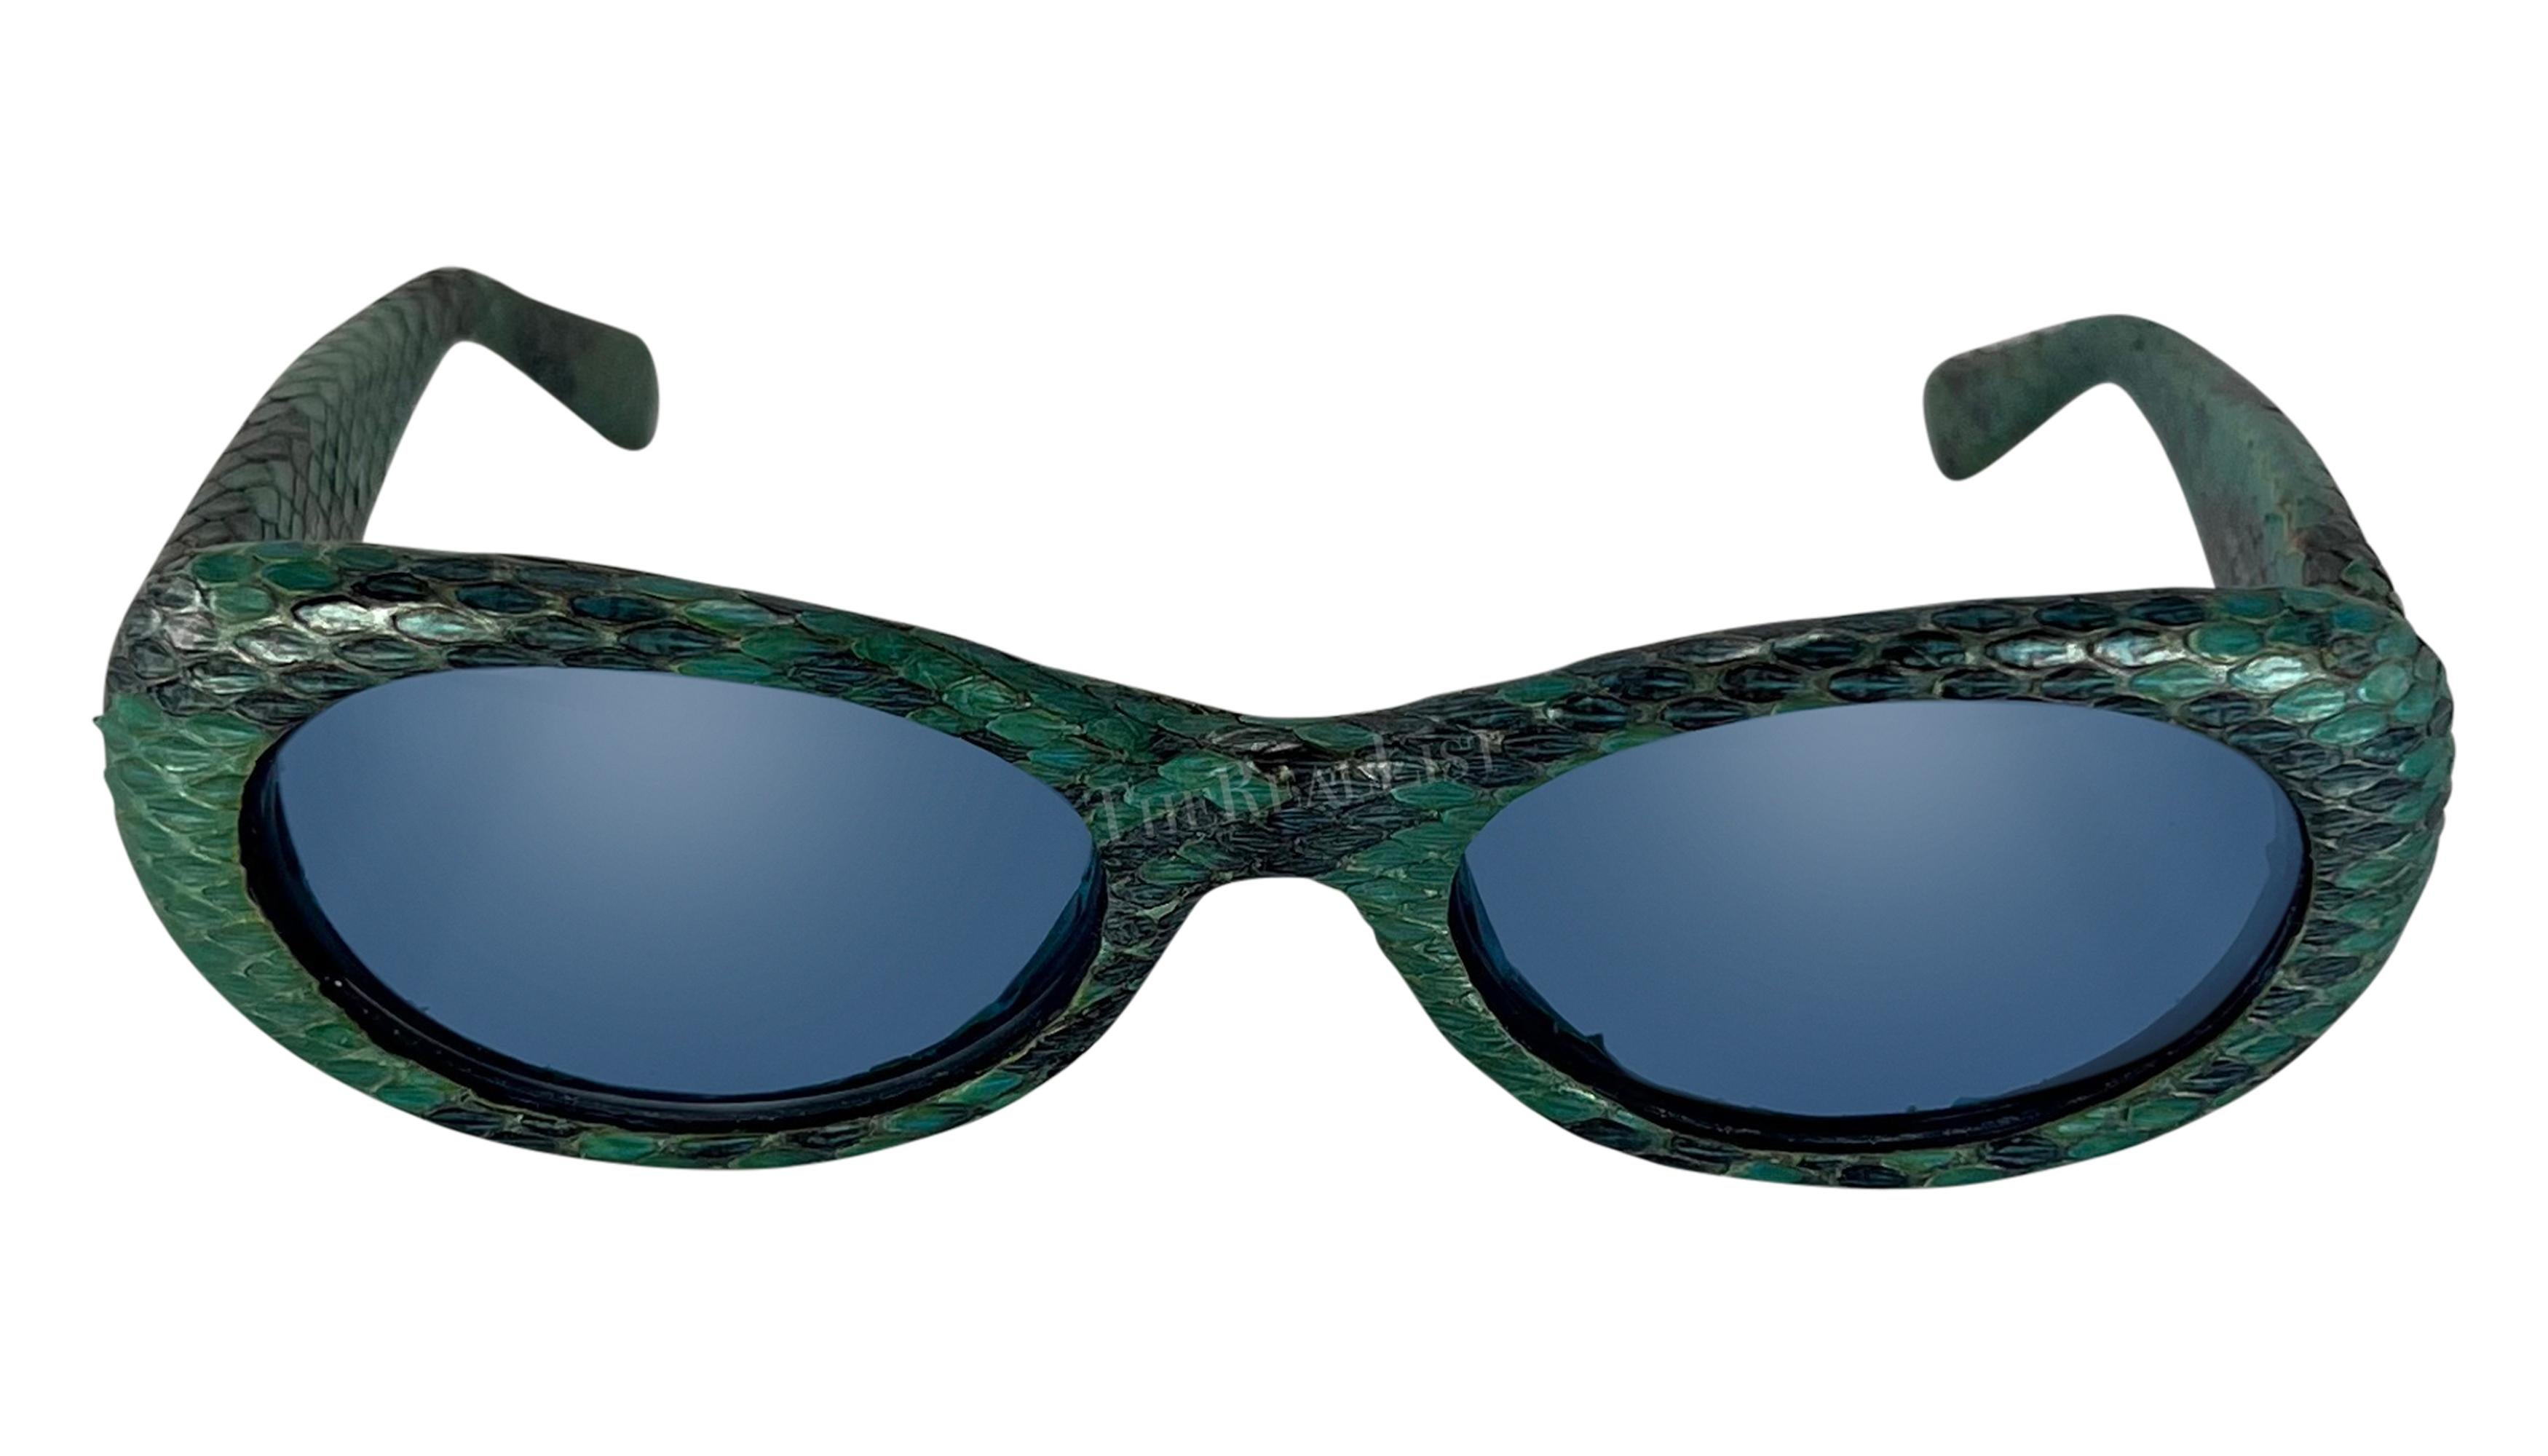 Diese ovale Sonnenbrille aus blauem Pythonleder von Gianni Versace stammt aus der Frühjahr/Sommer-Kollektion 2000 und wurde von Donatella Versace entworfen. Die Brille hat hellblaue Gläser und ist mit einem goldfarbenen griechischen Schlüsselmuster